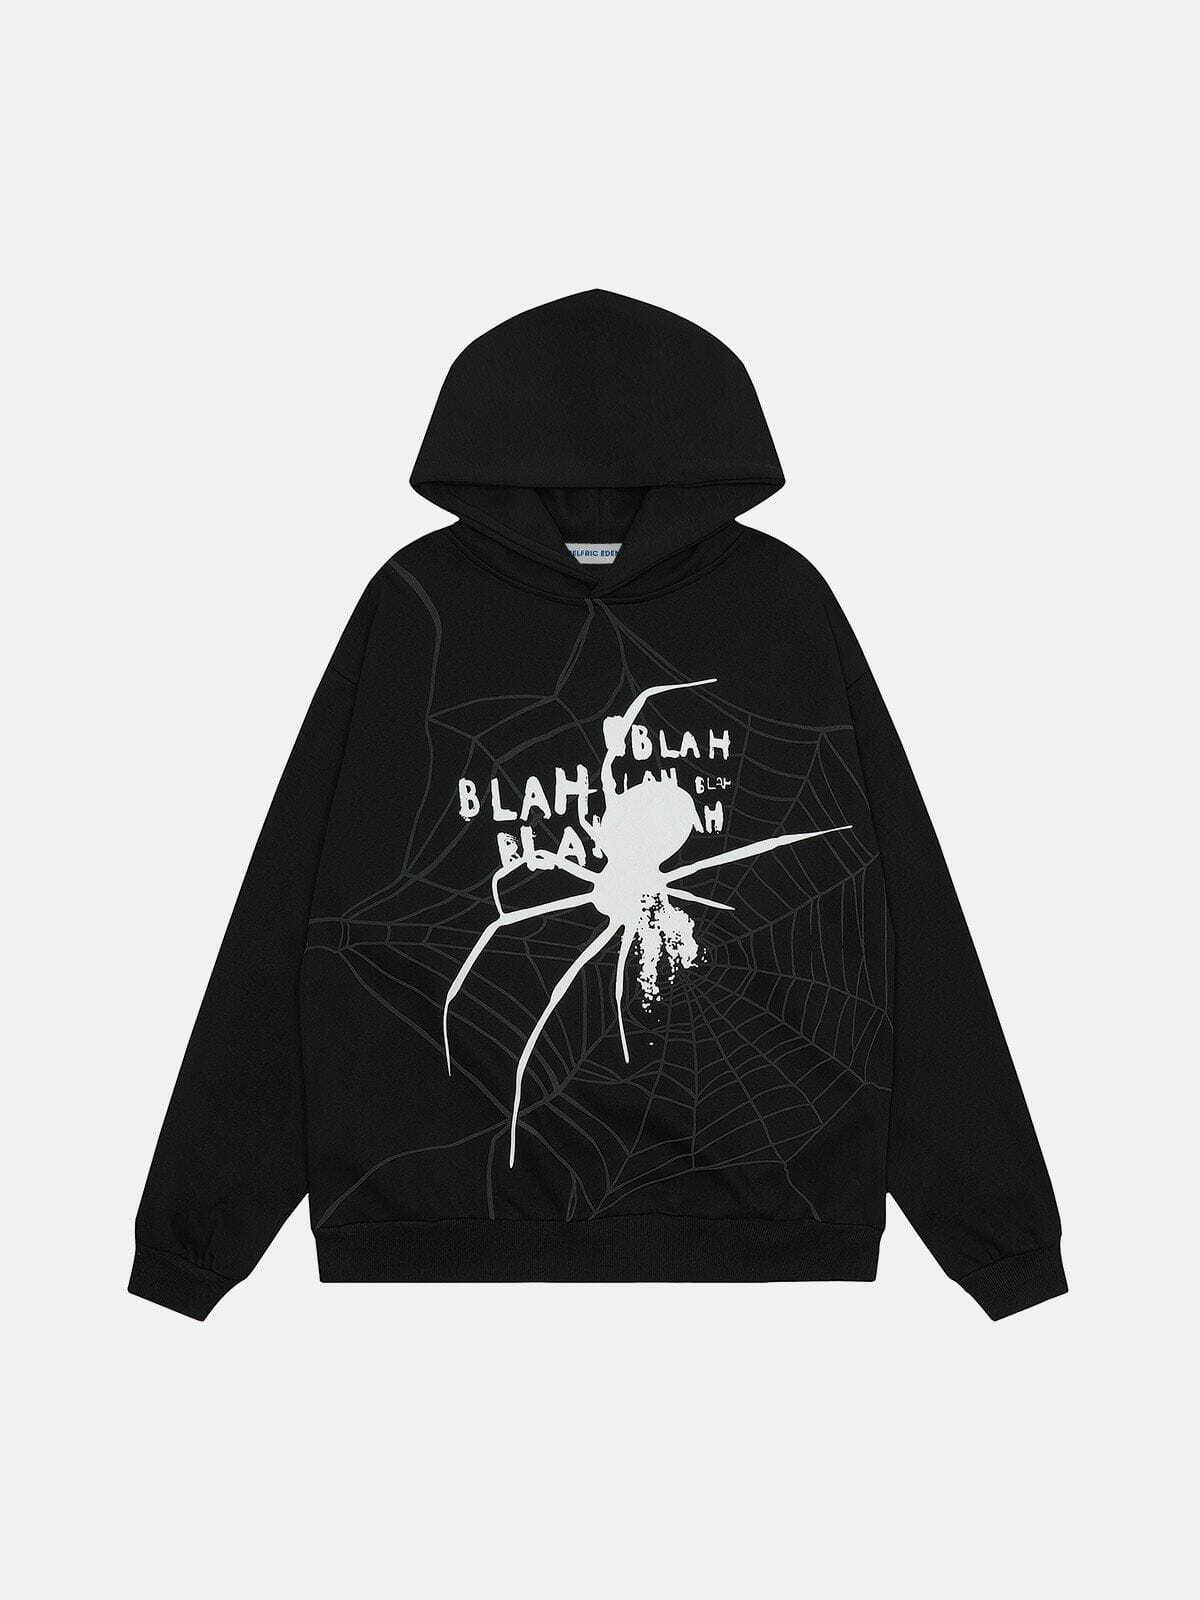 spider shadow hoodie edgy & urban streetwear 3567